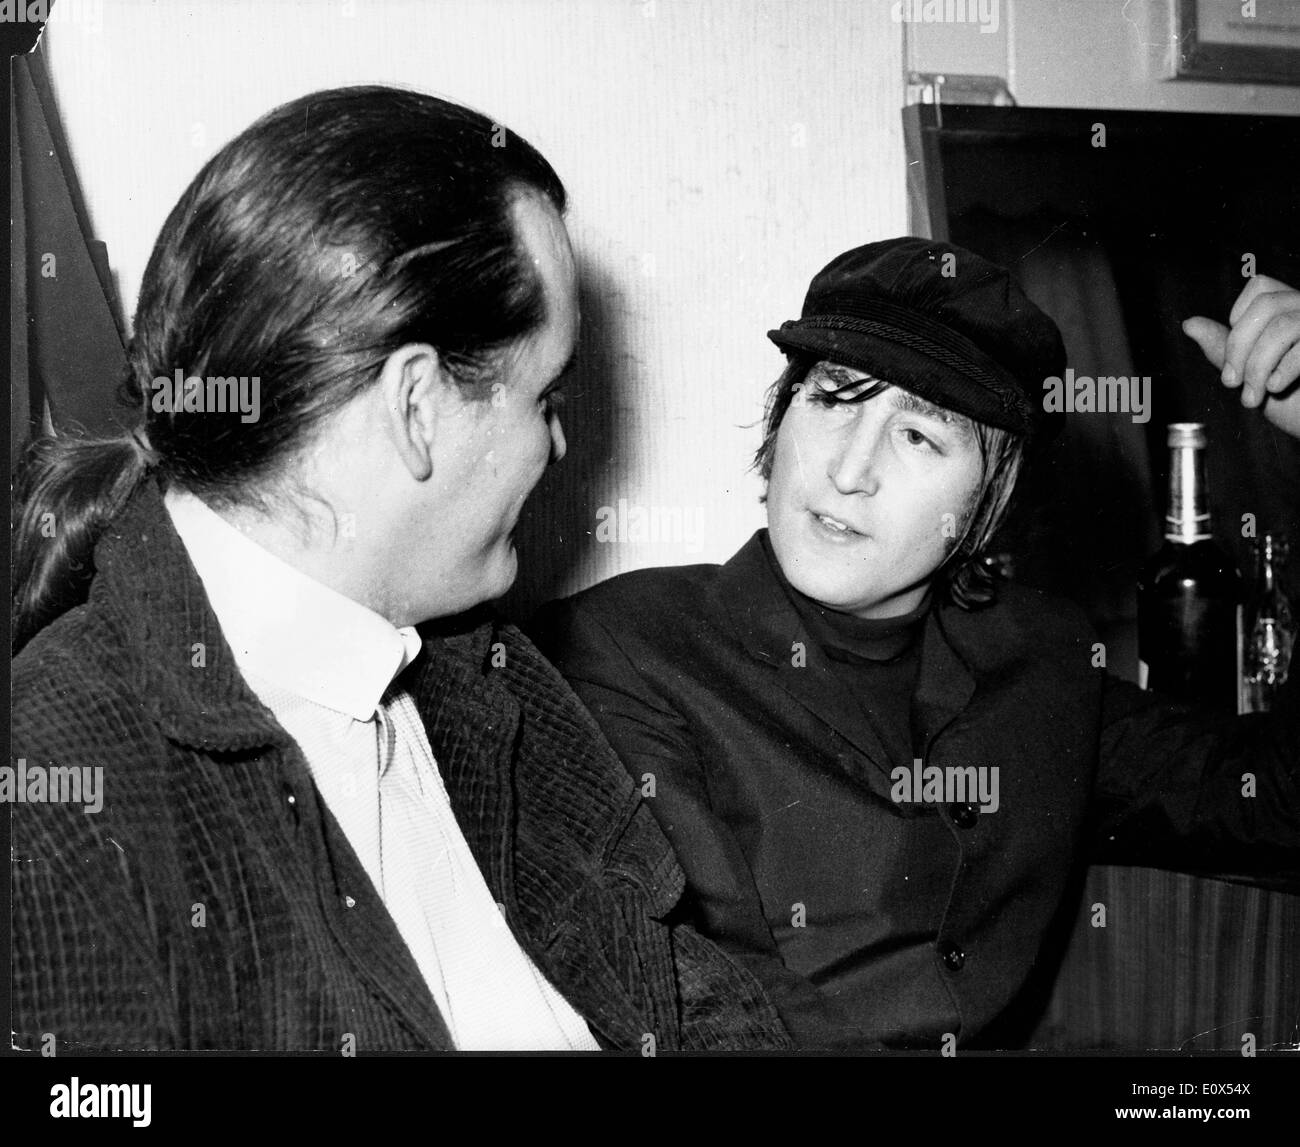 Beatles-Sänger John Lennon besucht mit p.j. Proby Stockfoto